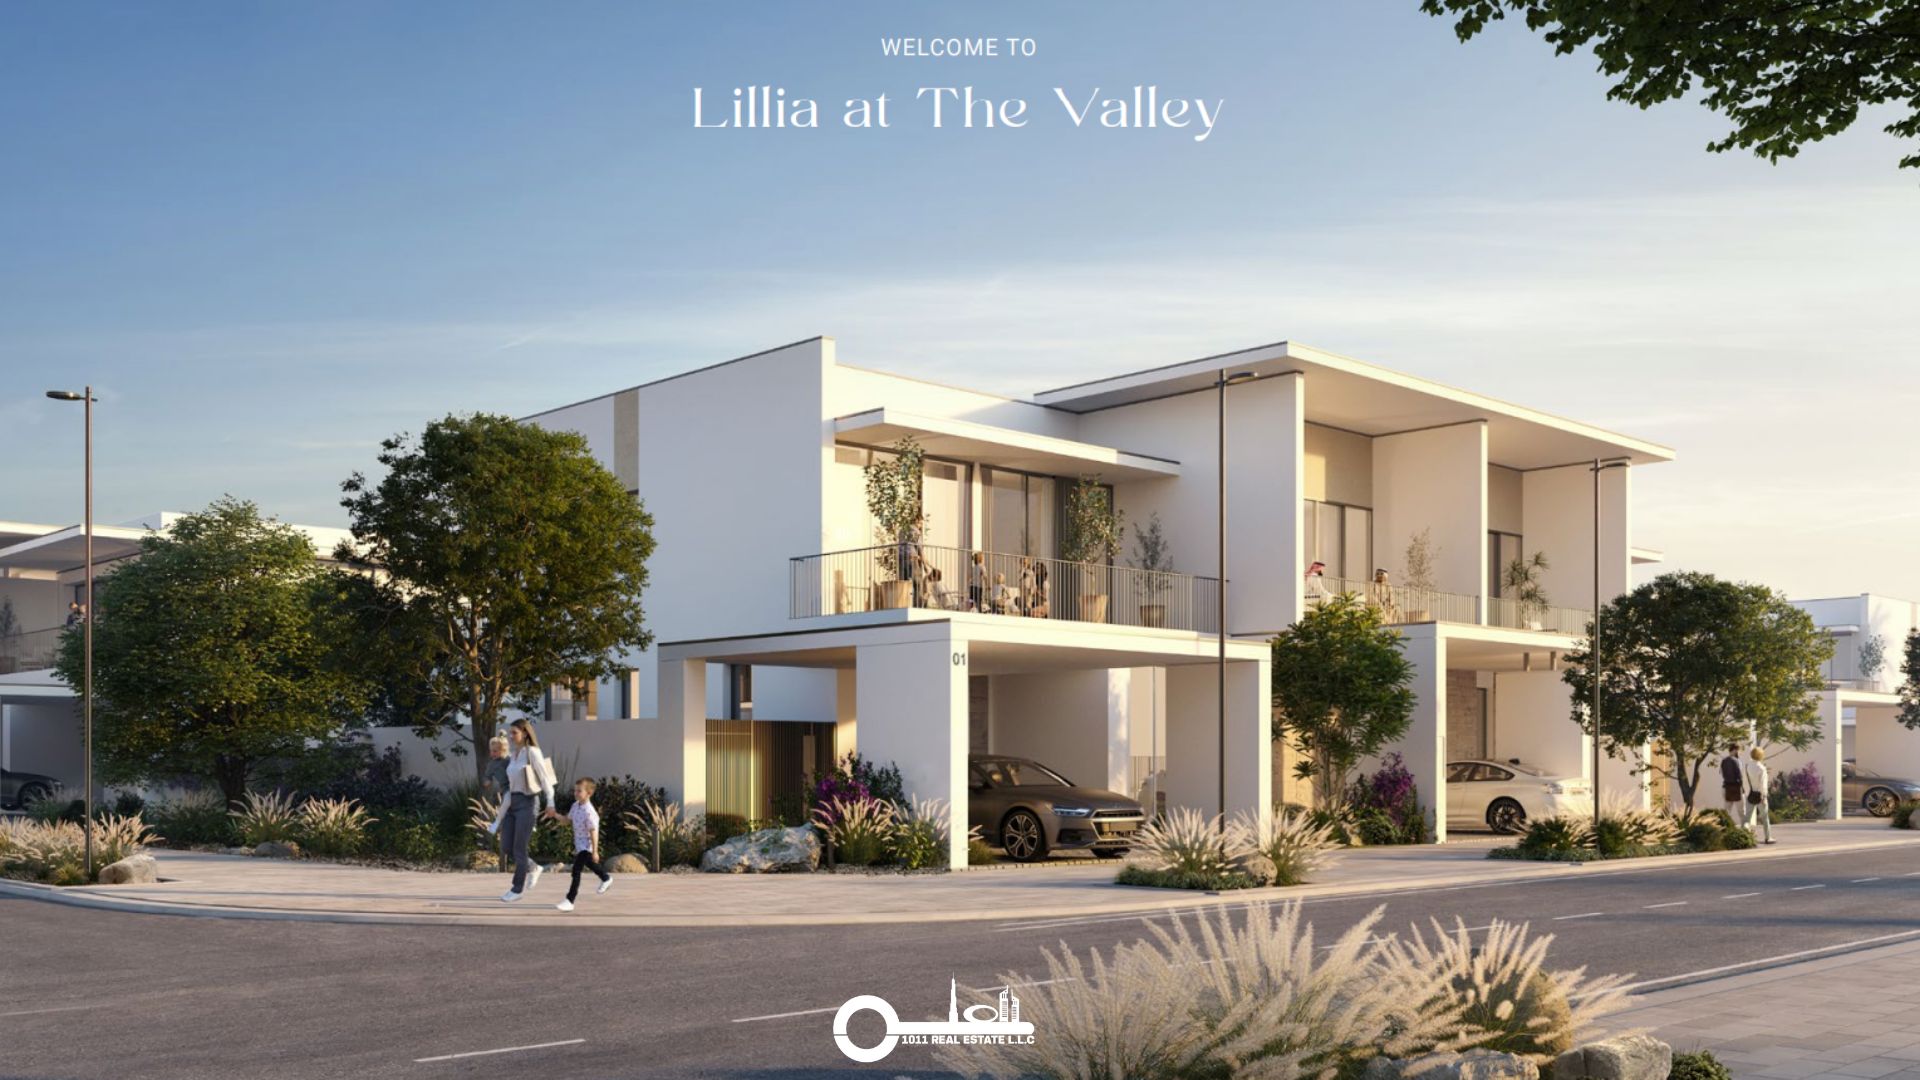 Lillia 1011 Real Estate 